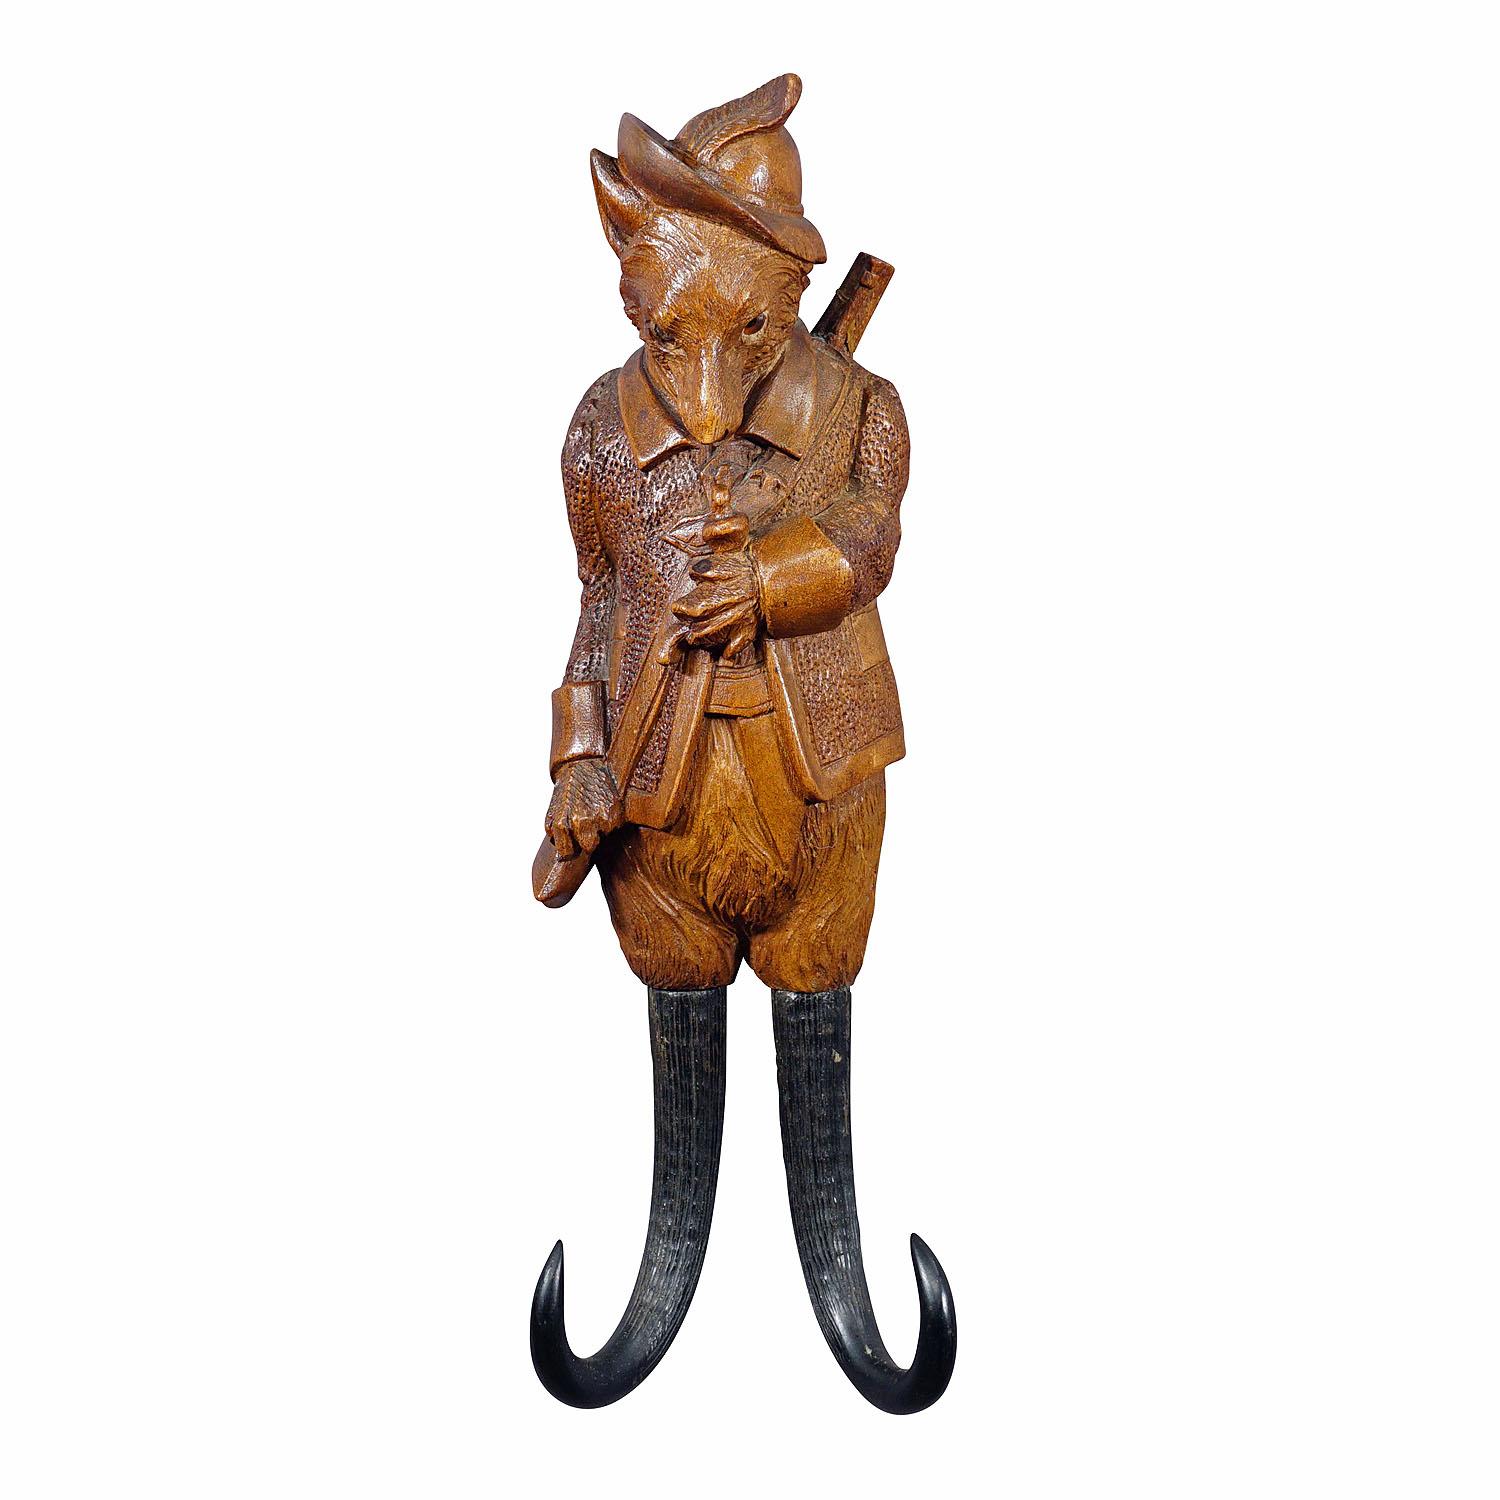 Porte-fouet ou crochet mural en forme de renard sculpté Black Forest

Porte-manteau ou porte-fouet sculpté à la main, de style décoratif de cabine, représentant un renard armé d'un fusil. Avec des bois de chamois véritables en guise de crochets.